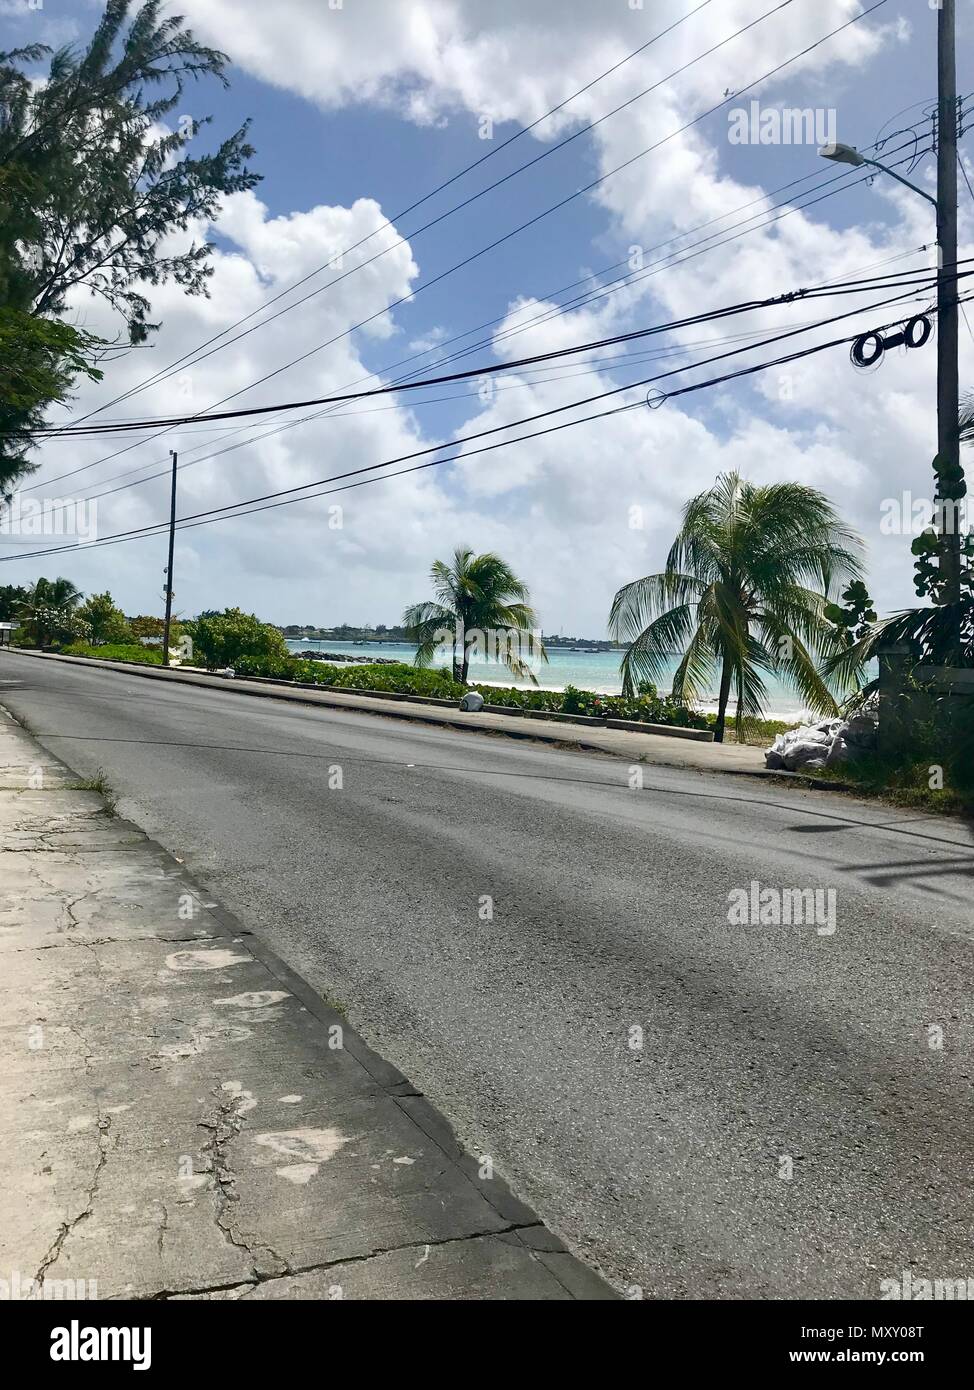 Kleine Küstenstraße in Otley, Barbados (Karibik Insel - West Indies) mit üppigen Palmen, einen schönen Strand und der malerischen türkisblauen Ozean Stockfoto